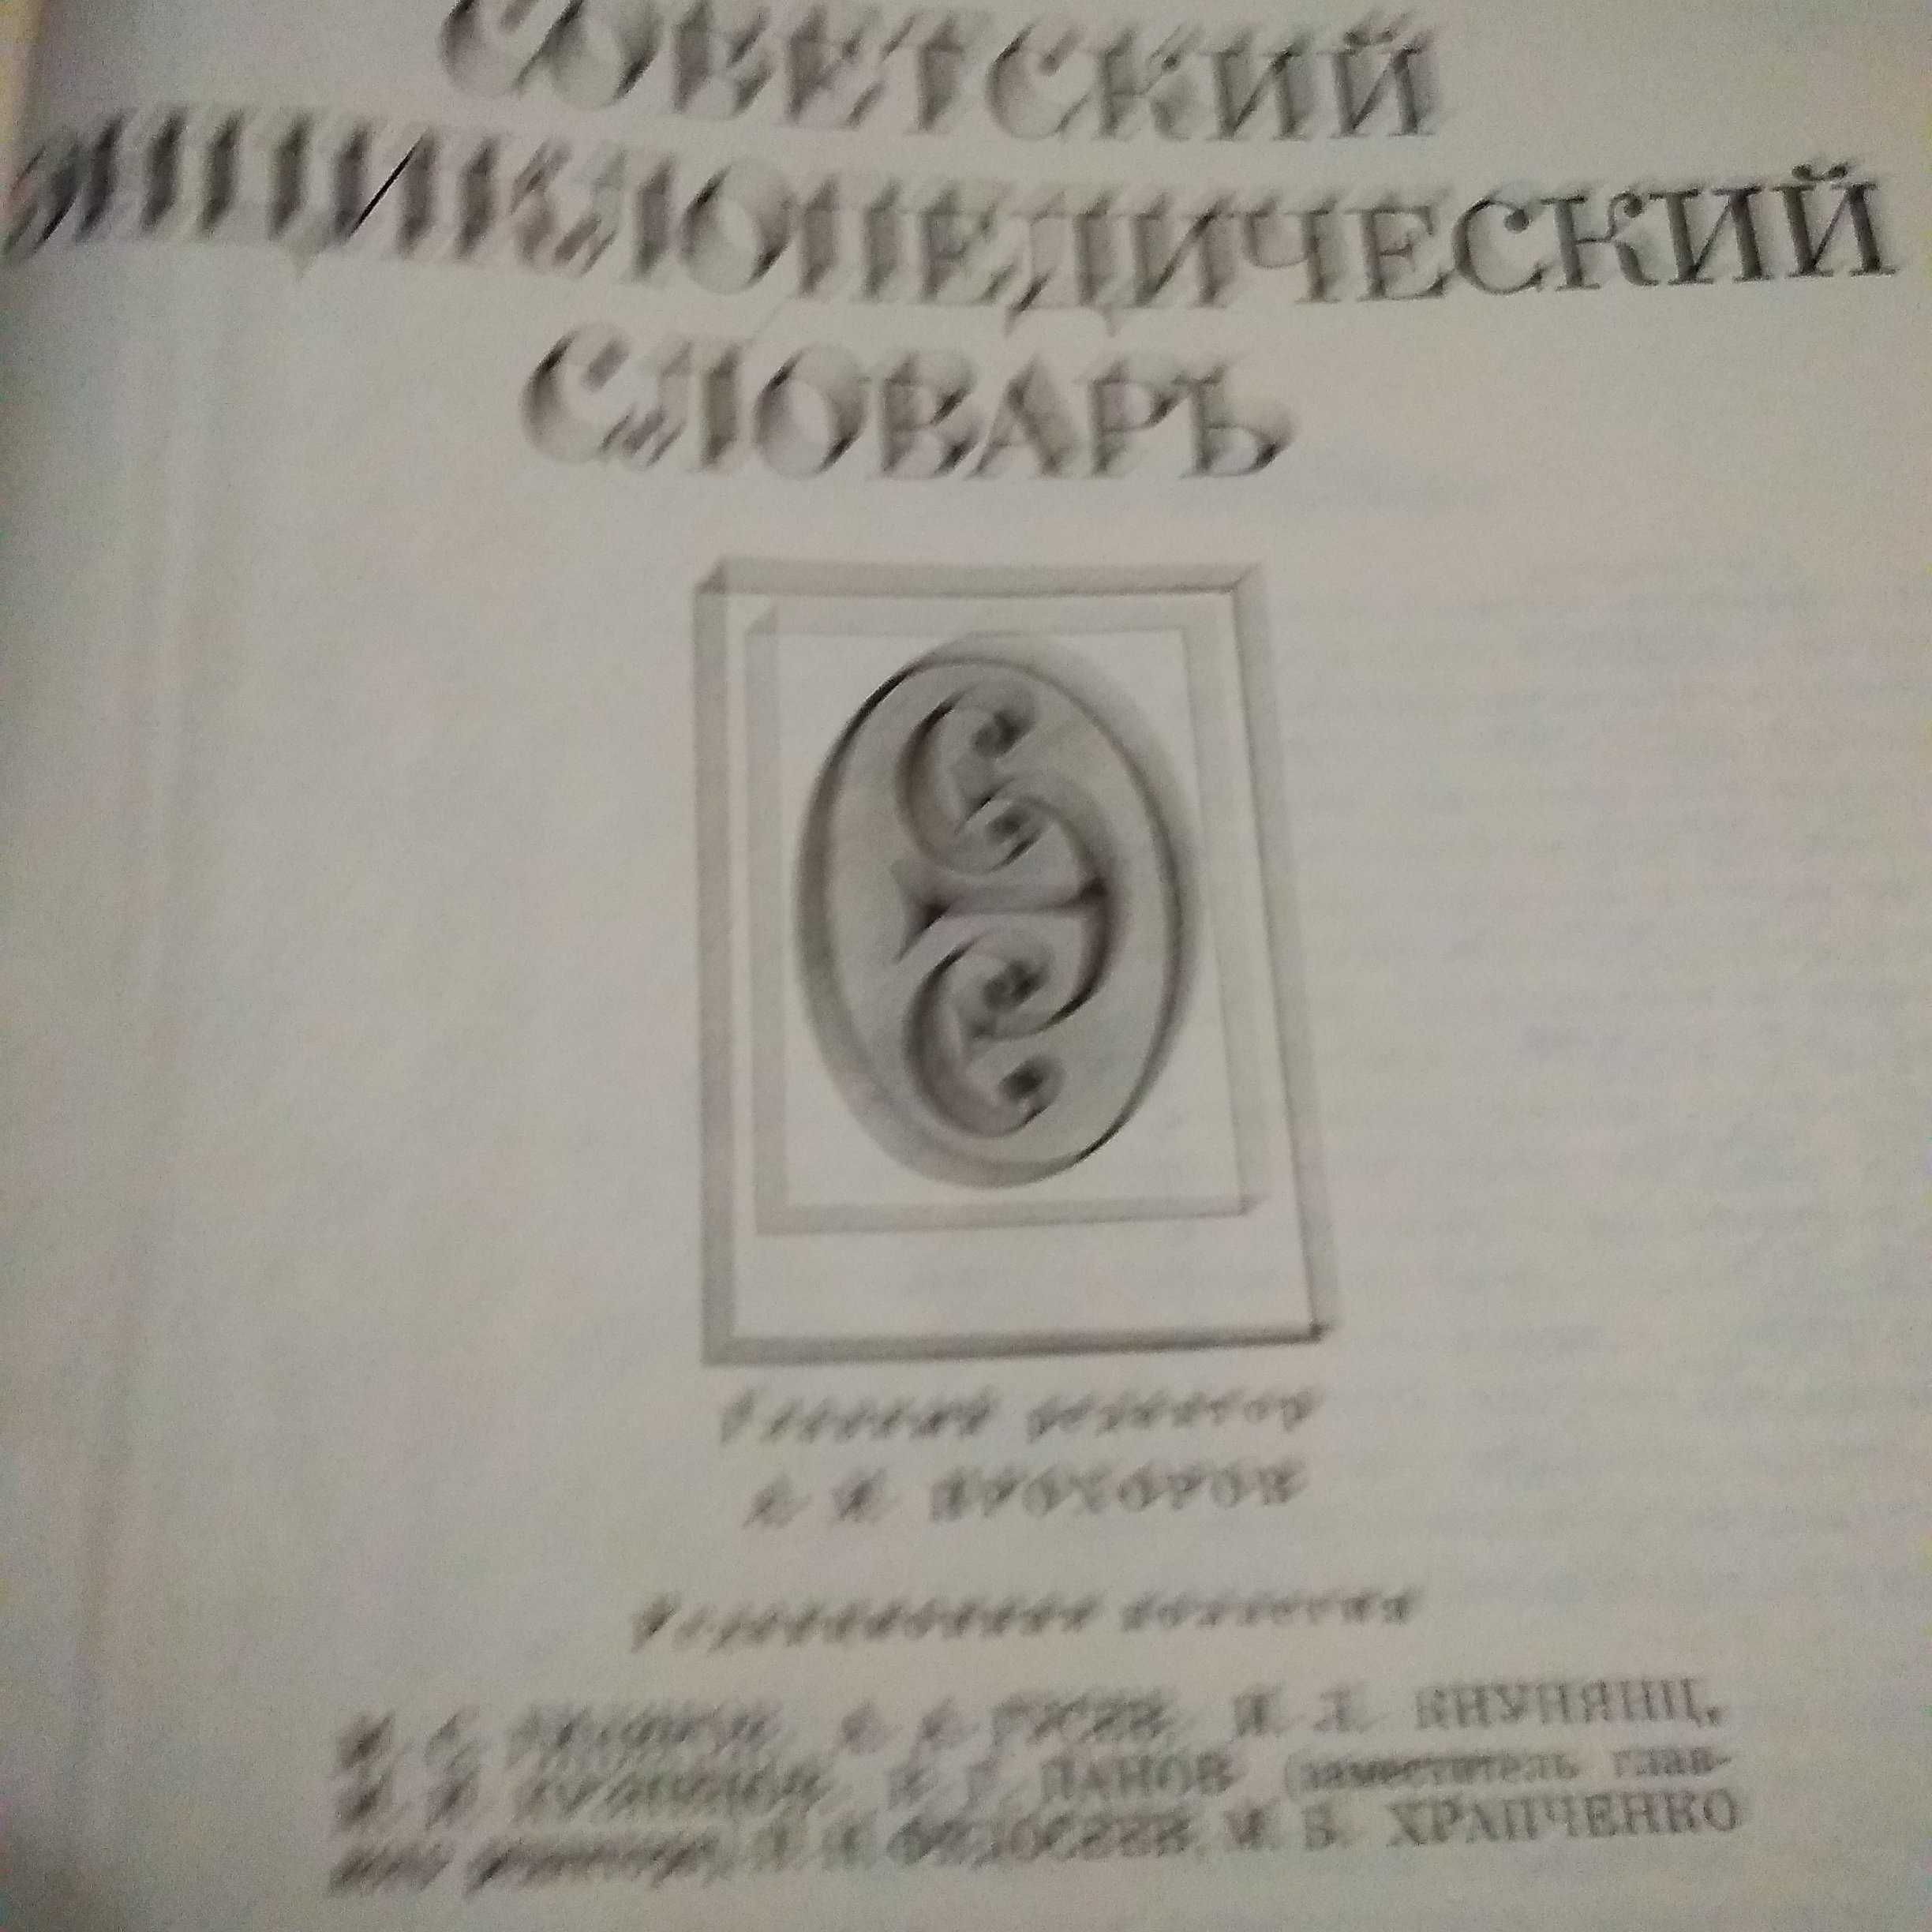 Єнциклопедический Военно-морской словарь.